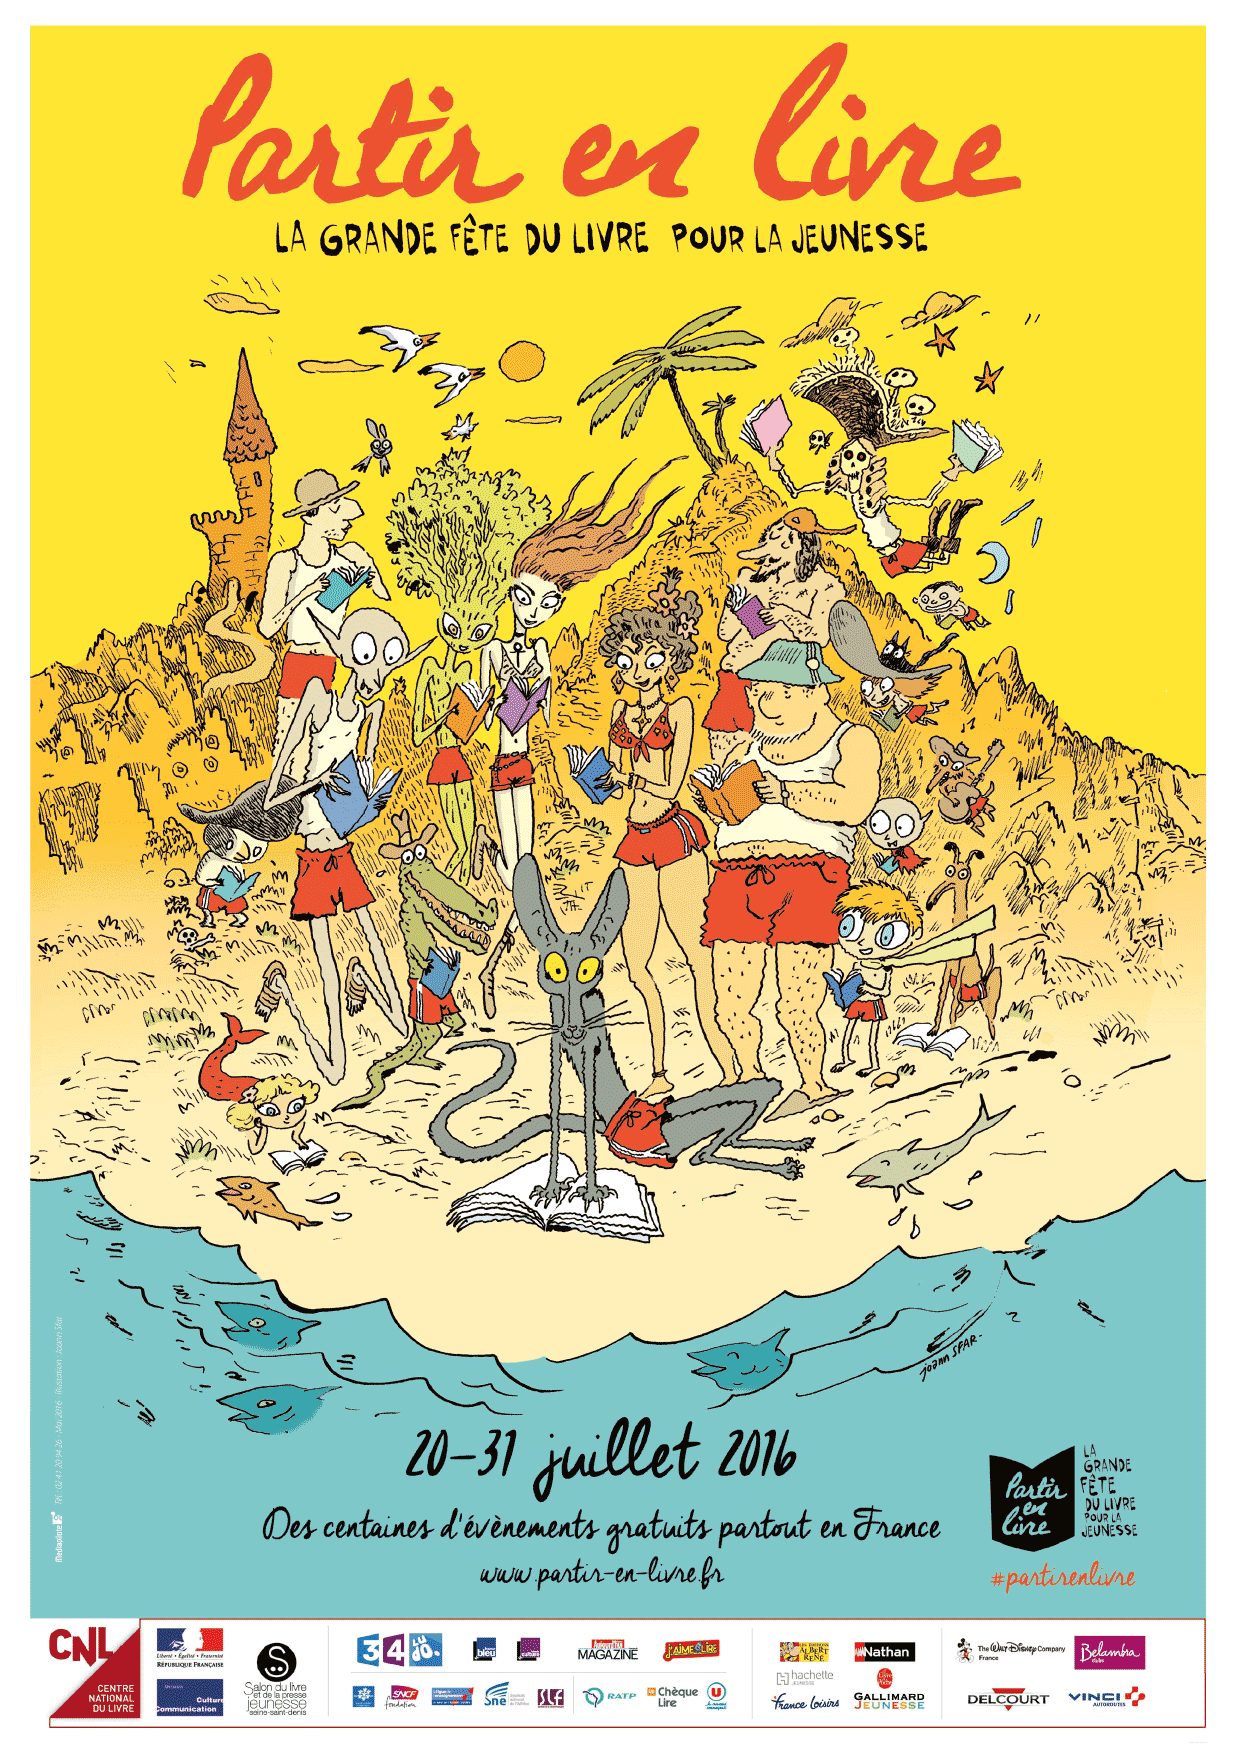 « Partir en livre » c'est du 20 au 31 juillet 2016 et partout en France !